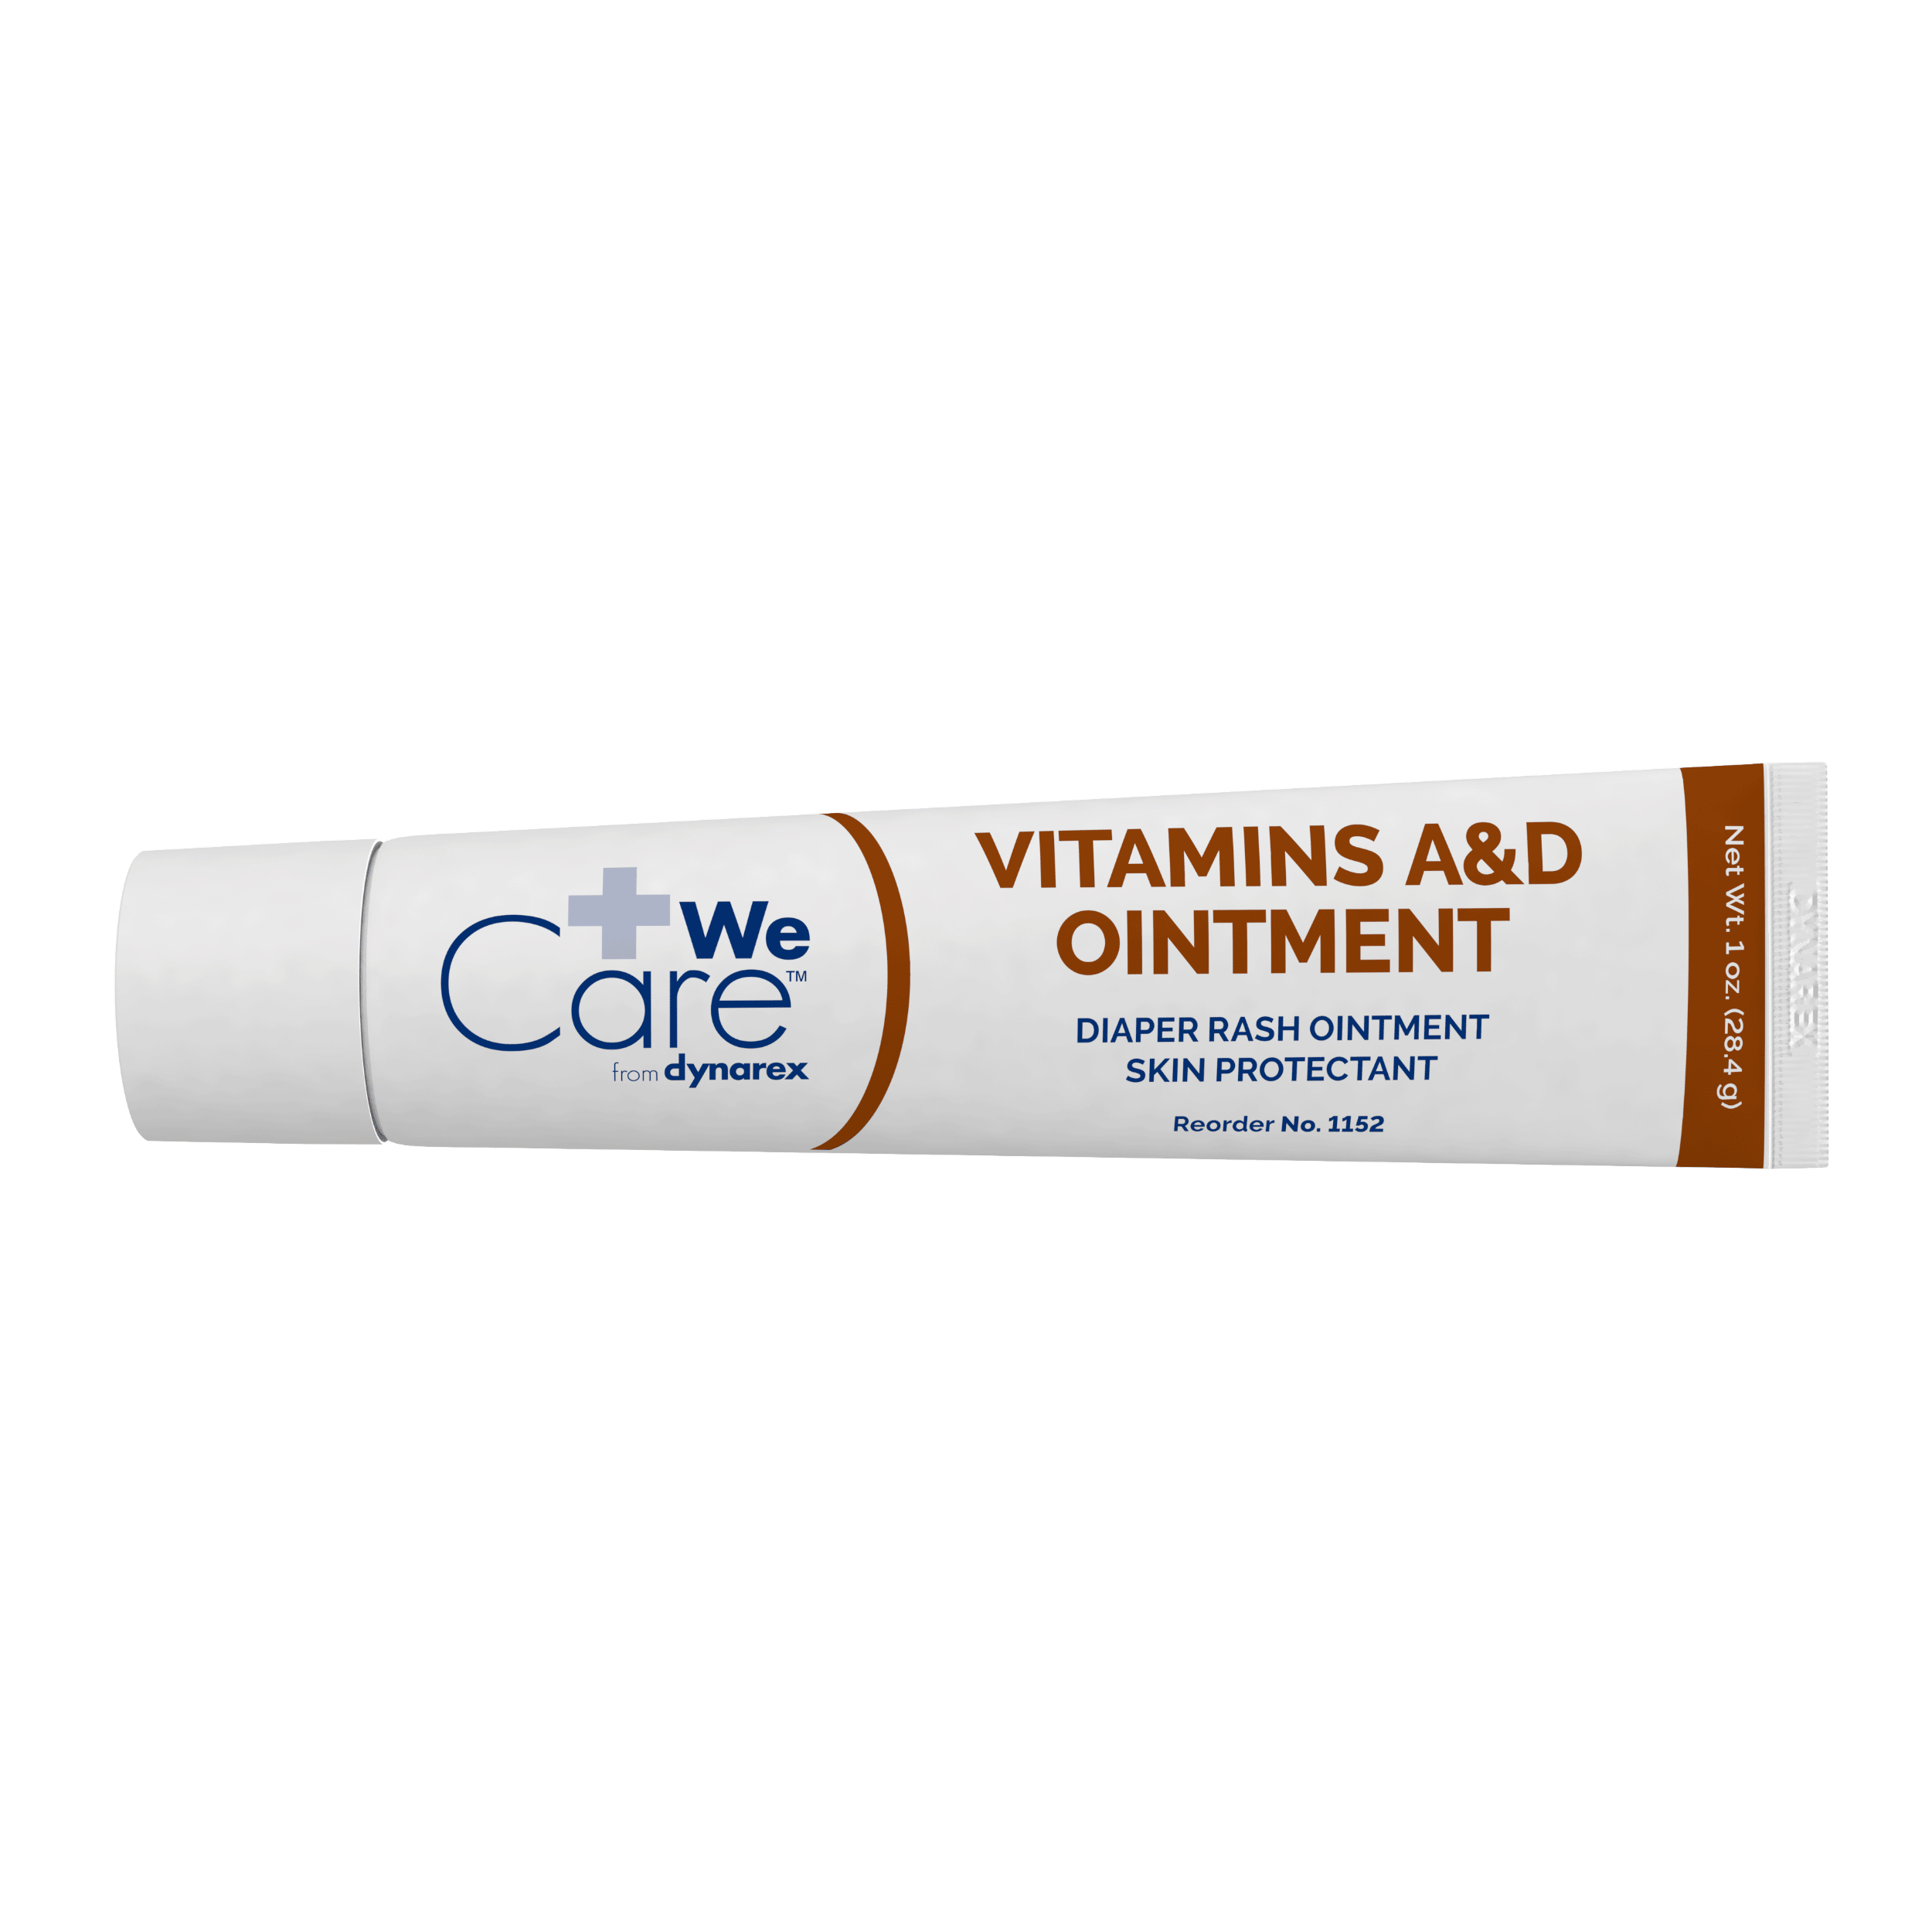 Vitamins A&D Ointment 1 oz. Tube